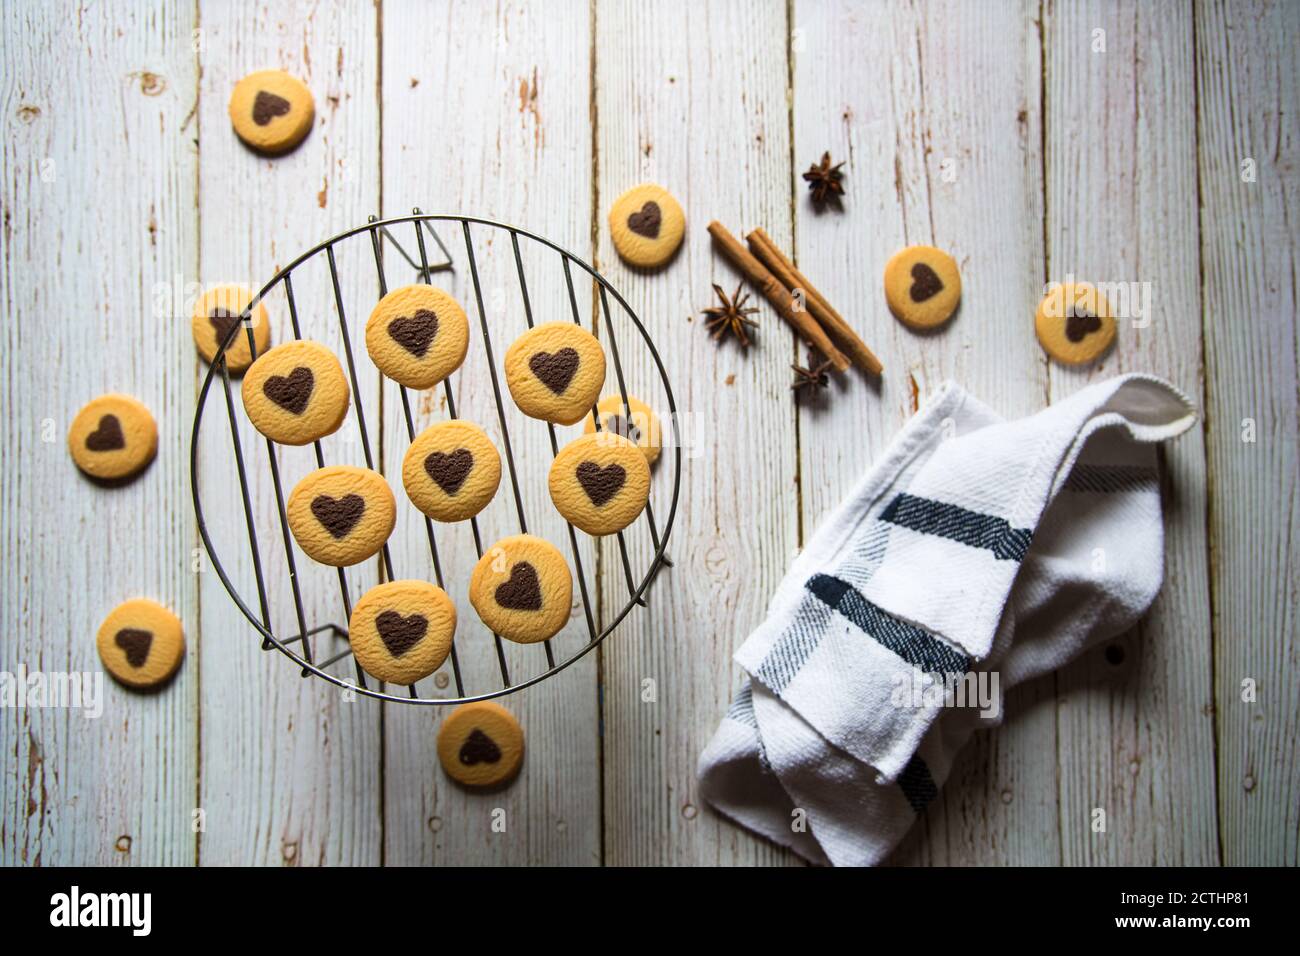 Cookies auf einem Grill stehen auf einem Hintergrund mit Verwendung von selektivem Fokus. Stockfoto